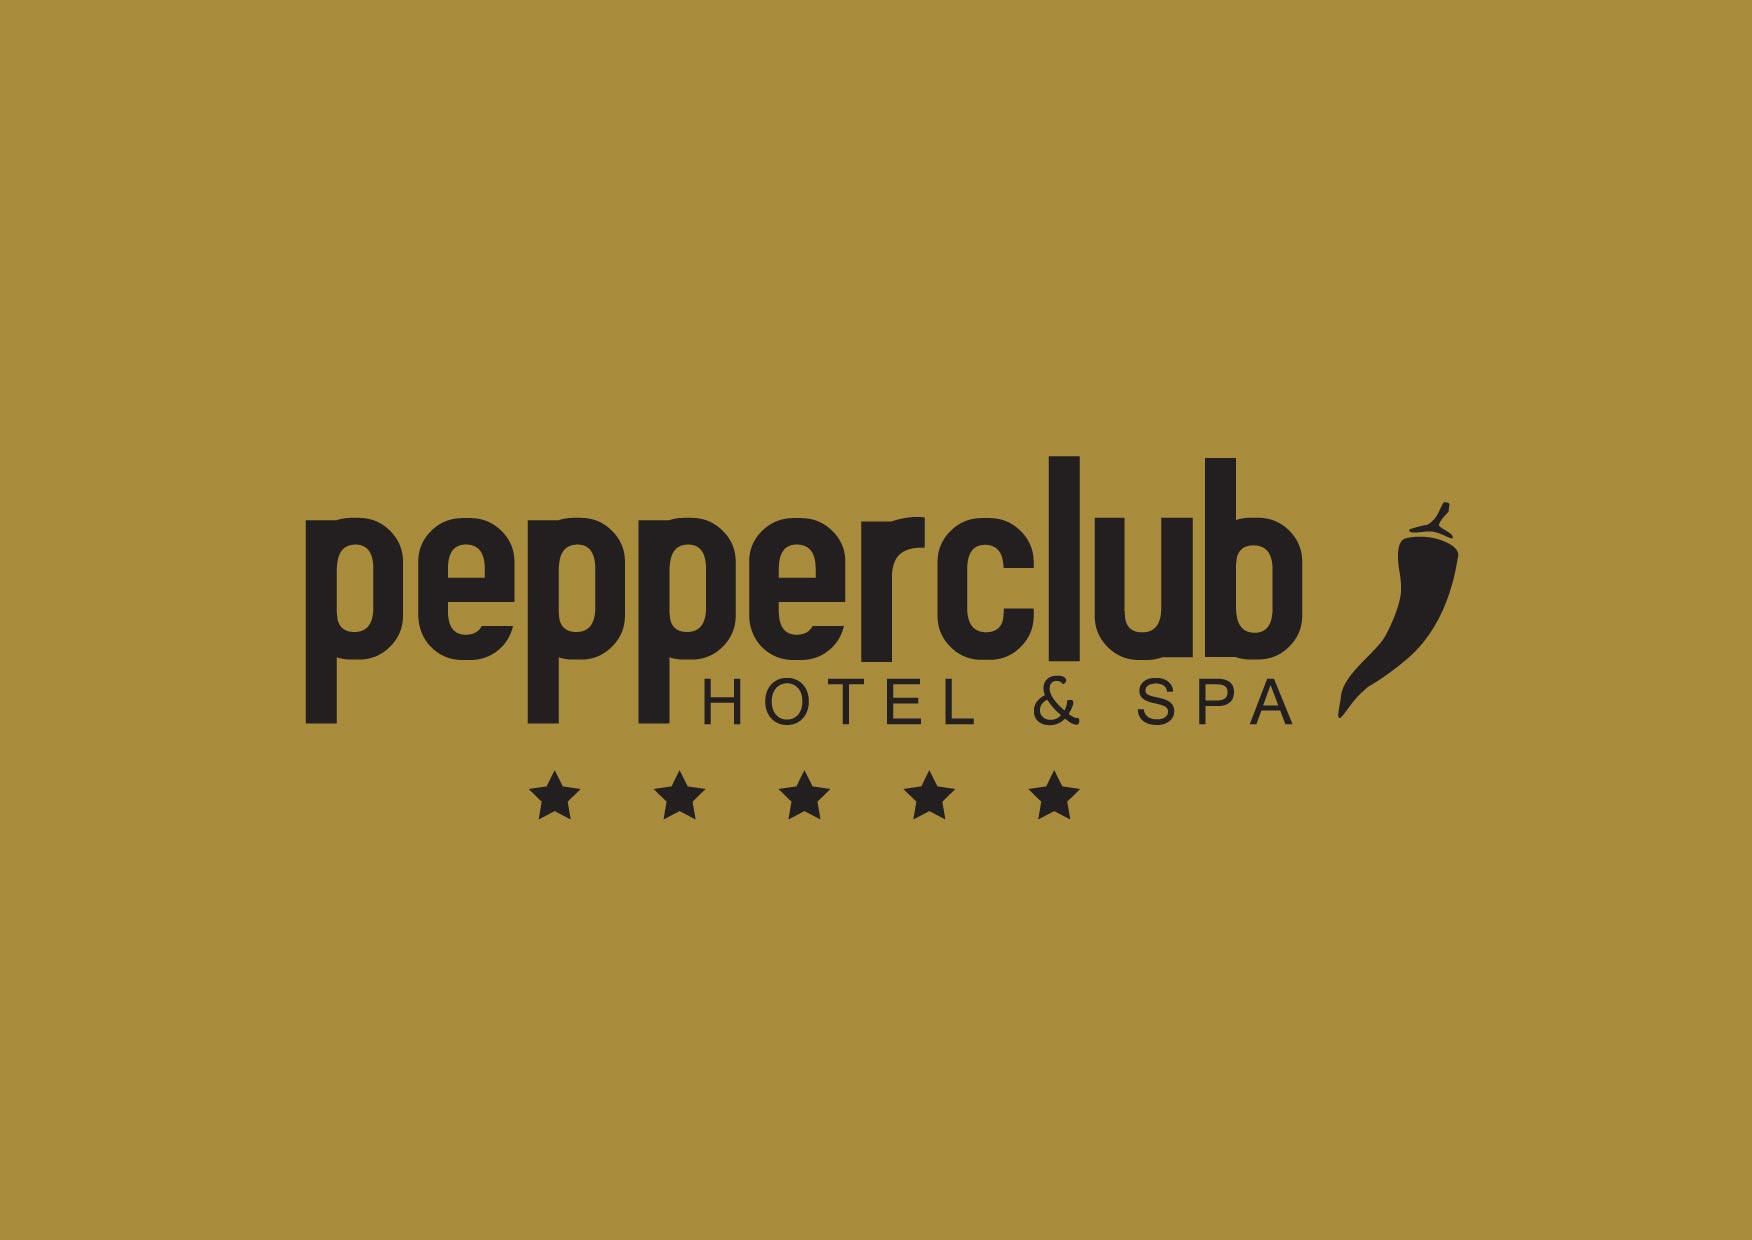 Pepper Club Hotel & Spa